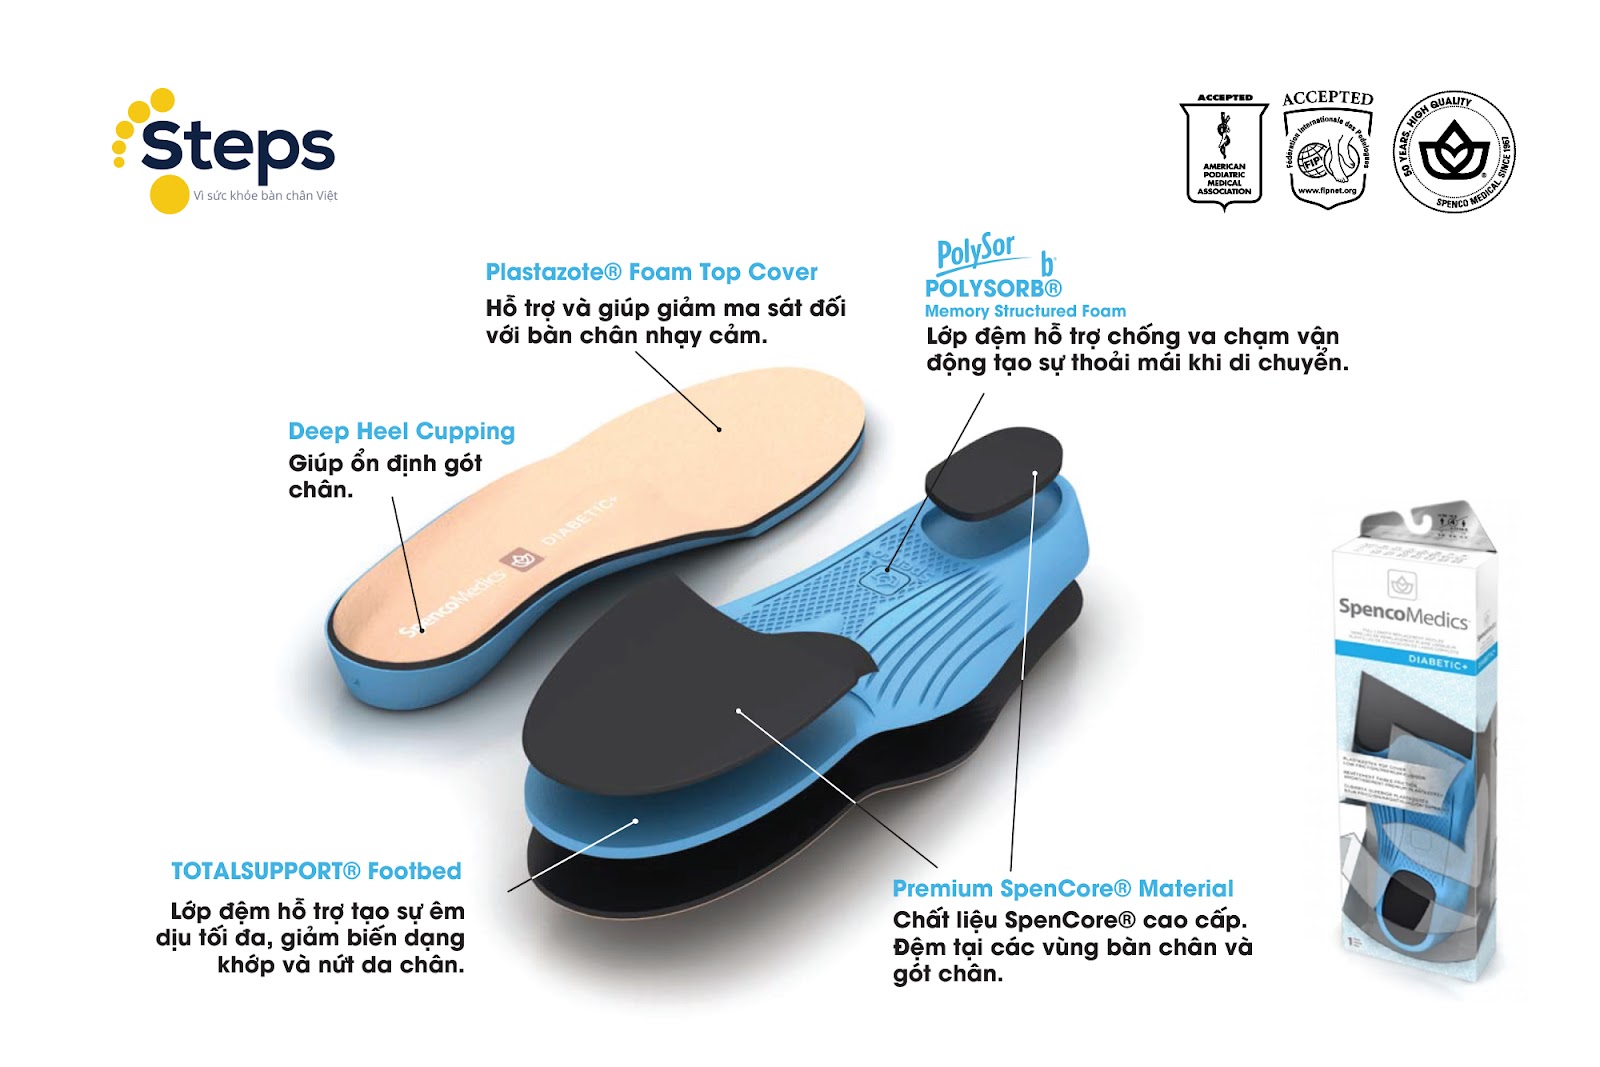 Cấu tạo lót giày tiểu đường Spenco Medics Diabetic